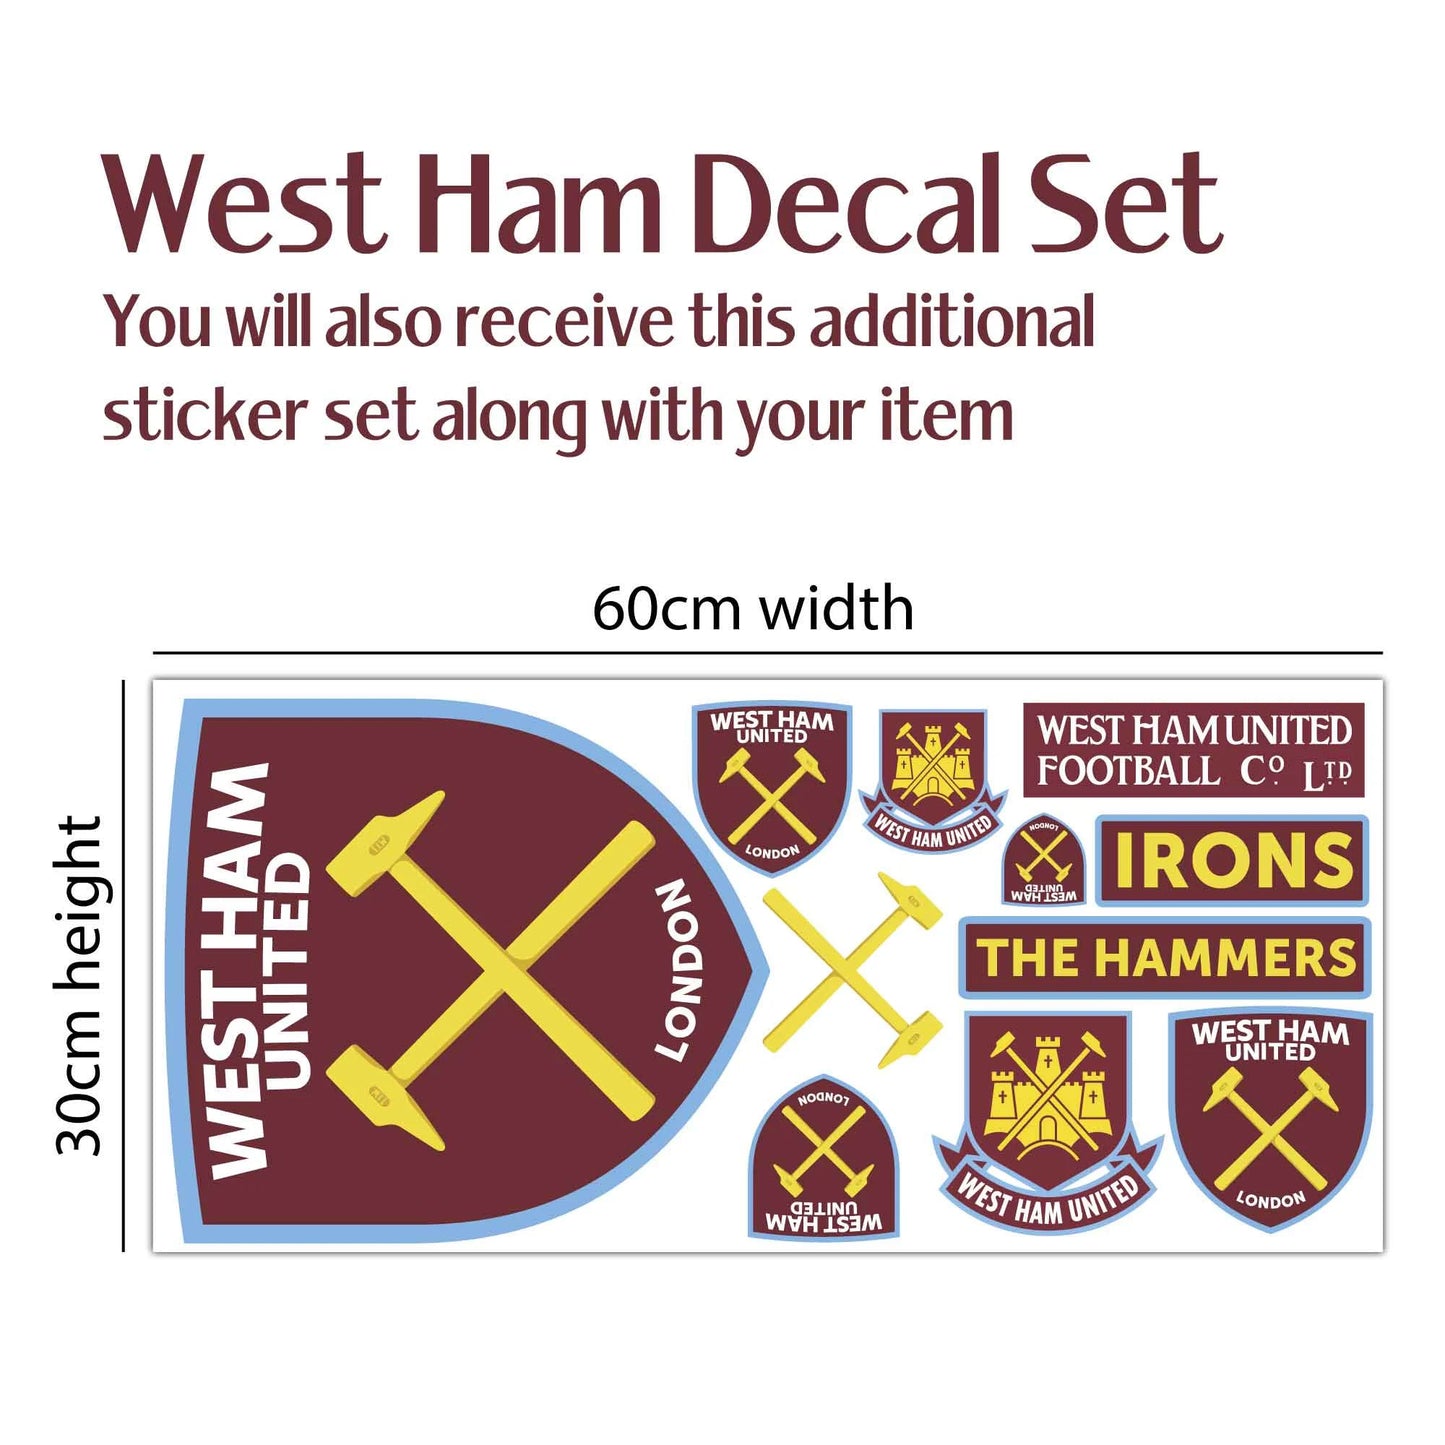 West Ham United Wall Sticker - Ward 23/24 Broken Wall Sticker + Hammers Decal Set Football Art